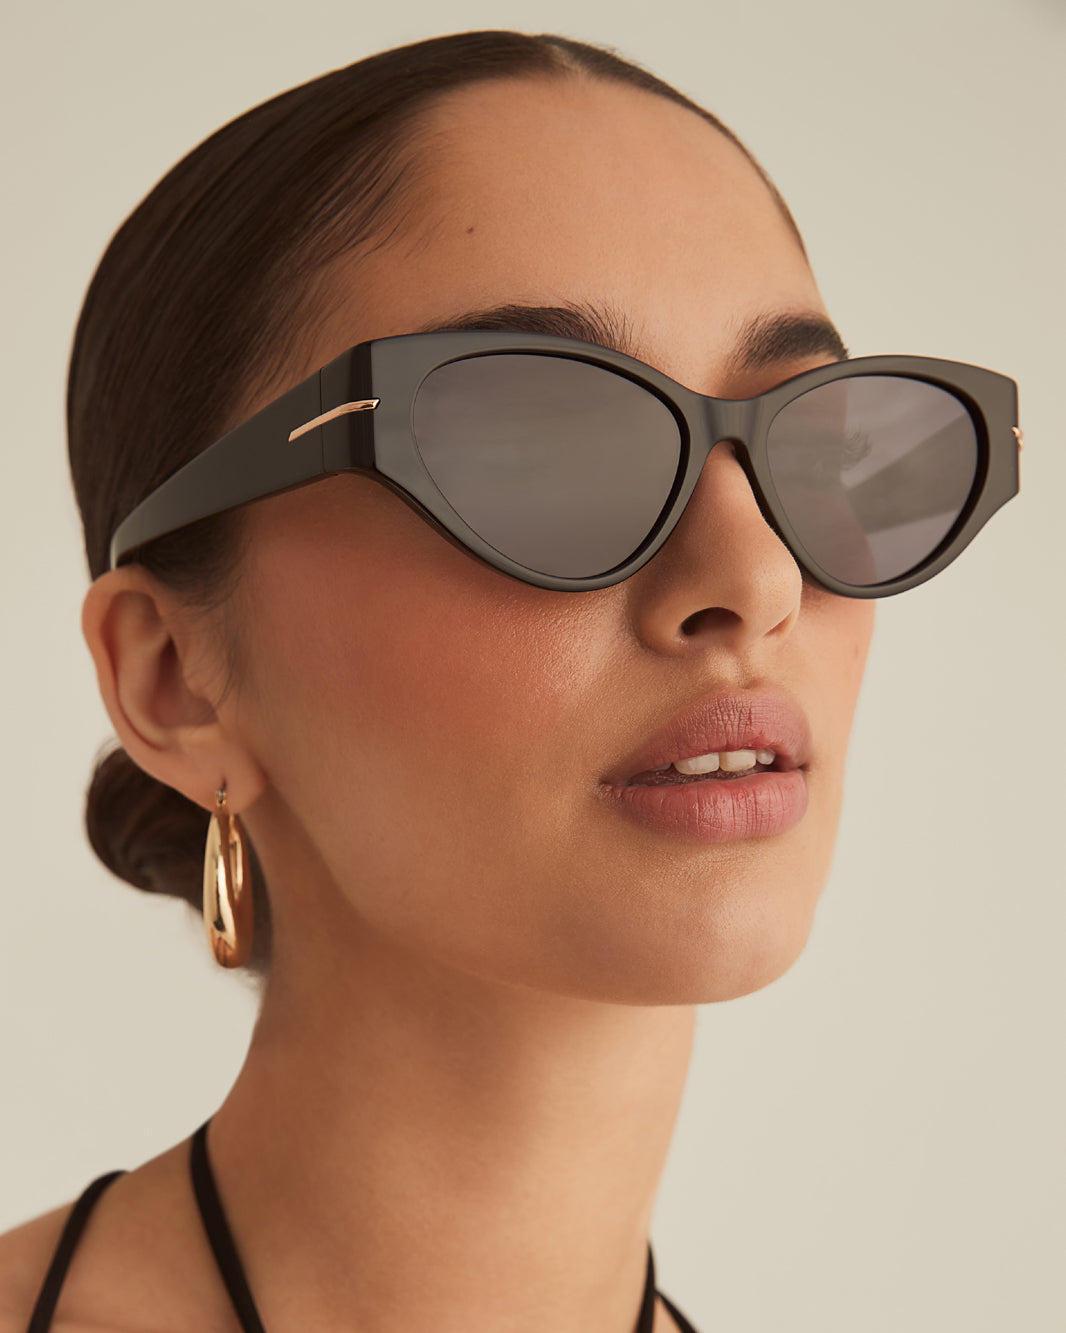 Bottega Veneta Women's BV1002S Cat-Eye Sunglasses